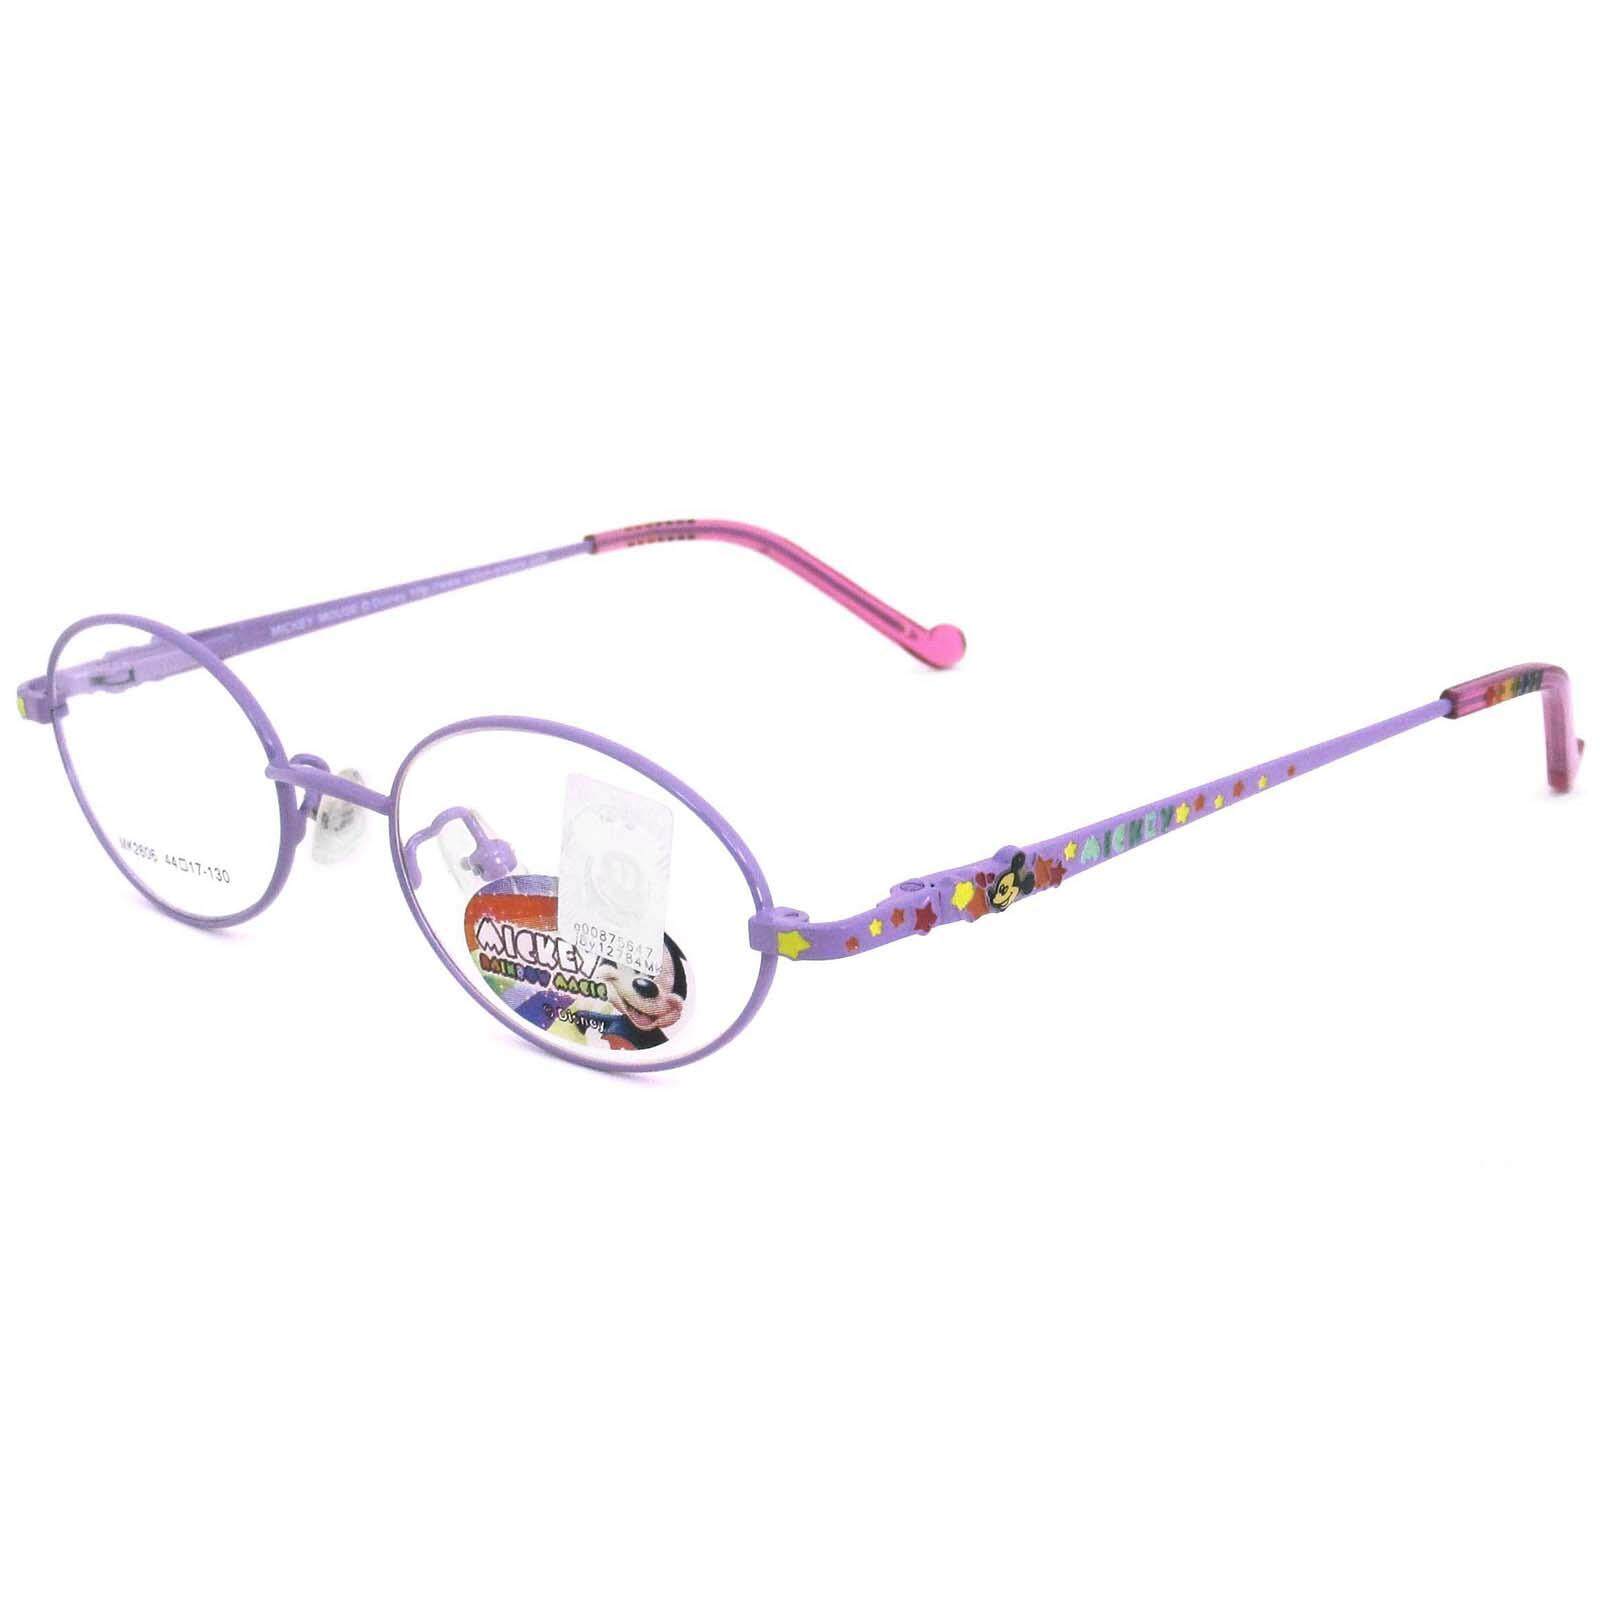 แว่นตาเกาหลีเด็ก Fashion Korea Children แว่นตาเด็ก รุ่น MK 2606 กรอบแว่นตาเด็ก Oval รูปไข่แนวนอน Eyeglass baby frame ( สำหรับตัดเลนส์ ) วัสดุ สแตนเลส สตีล เบา ขาสปริง Eyeglass Spring legs Stainless Steel material Eyewear Kid  Top Glasses